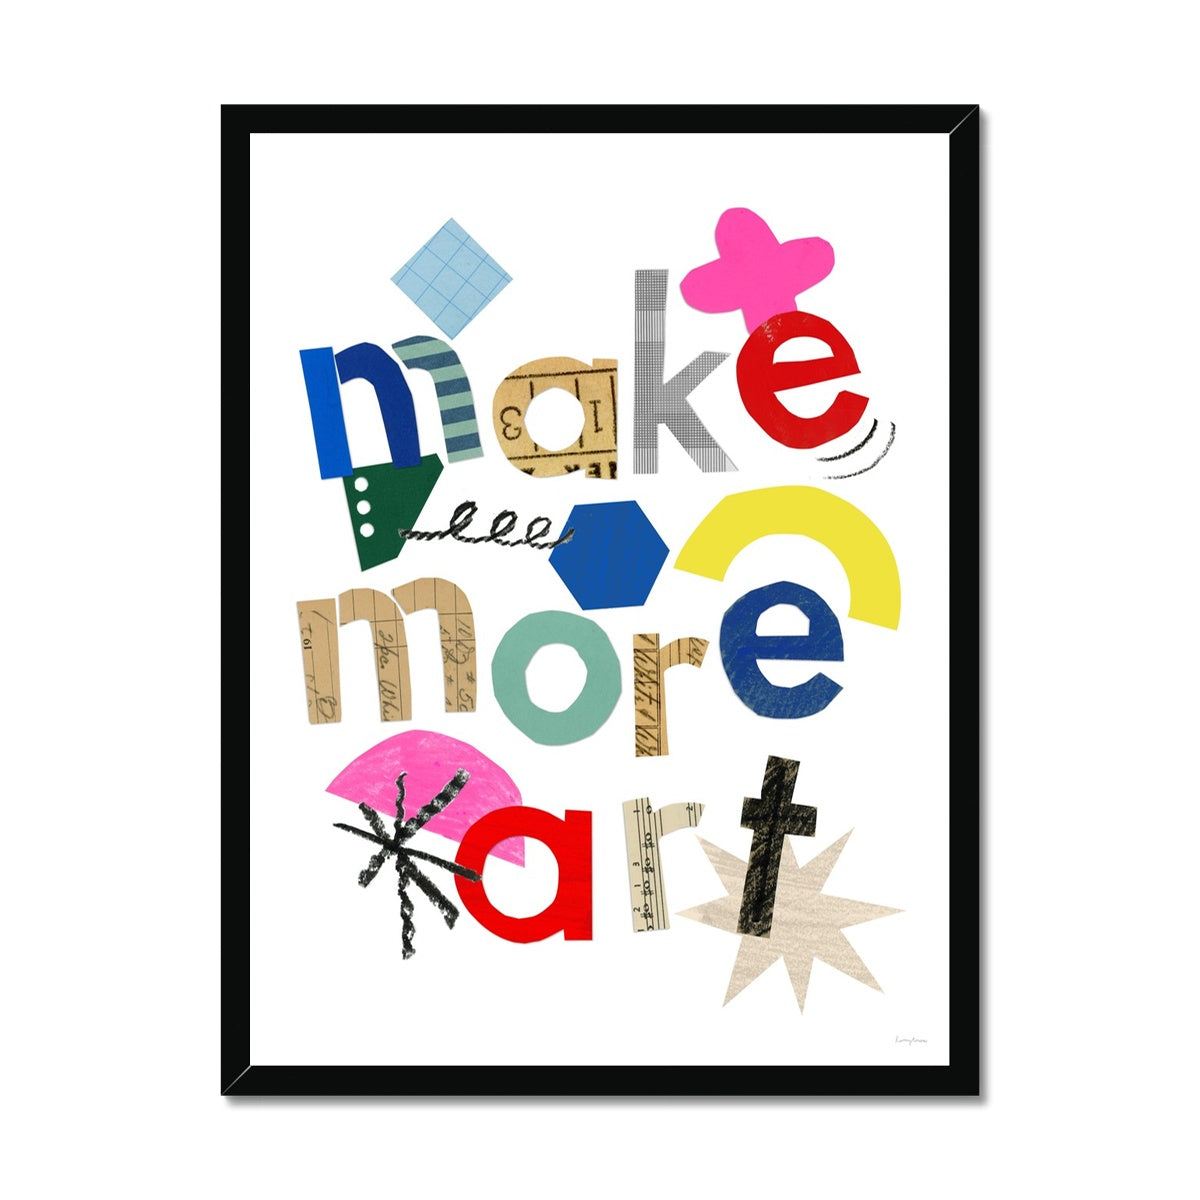 Make More Art Framed Fine Art Print